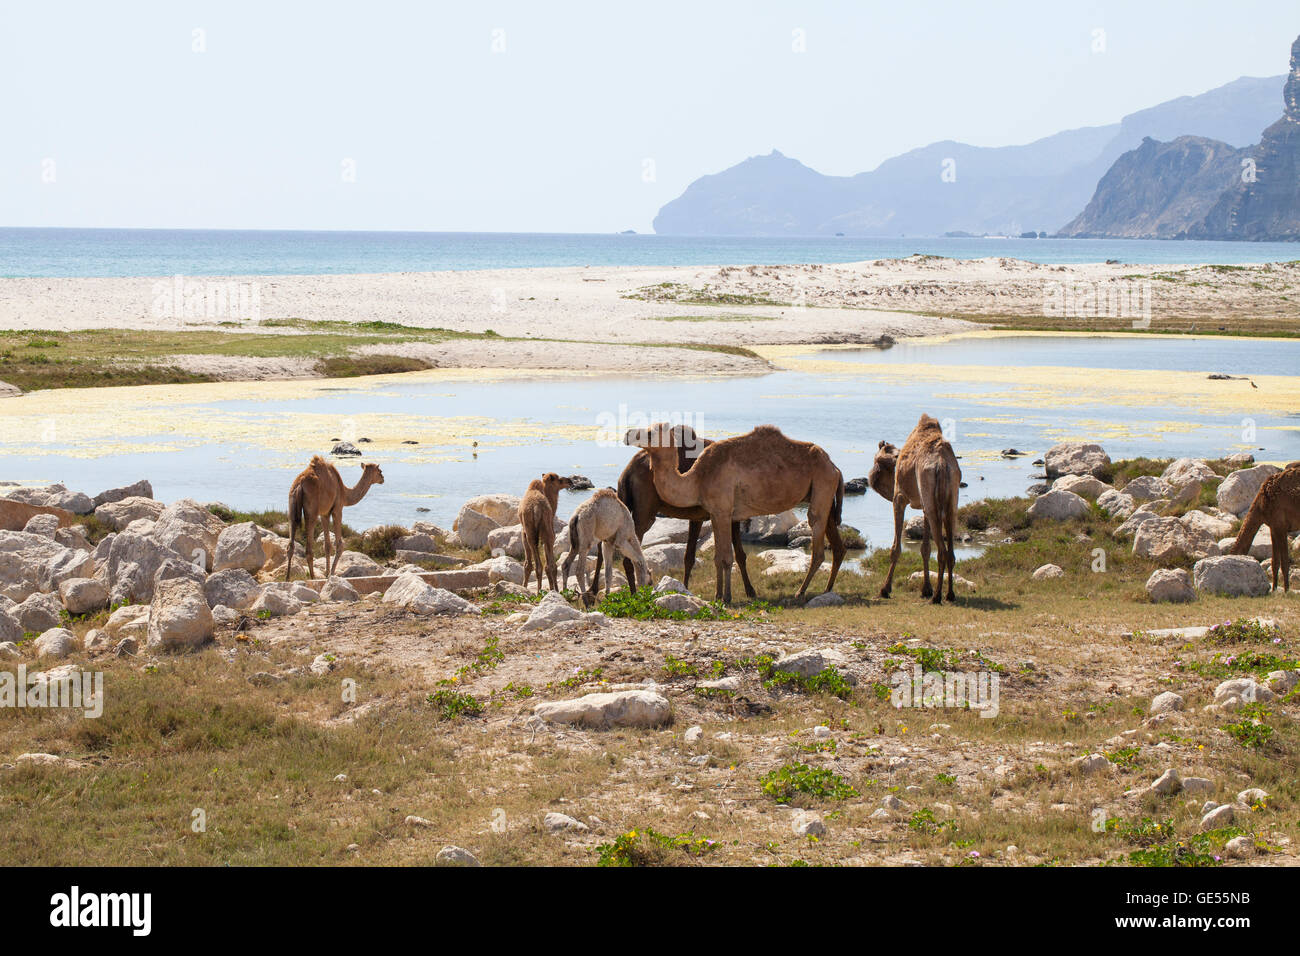 Image de chameaux sur une plage, dans la région de Dhofar, Oman. Banque D'Images